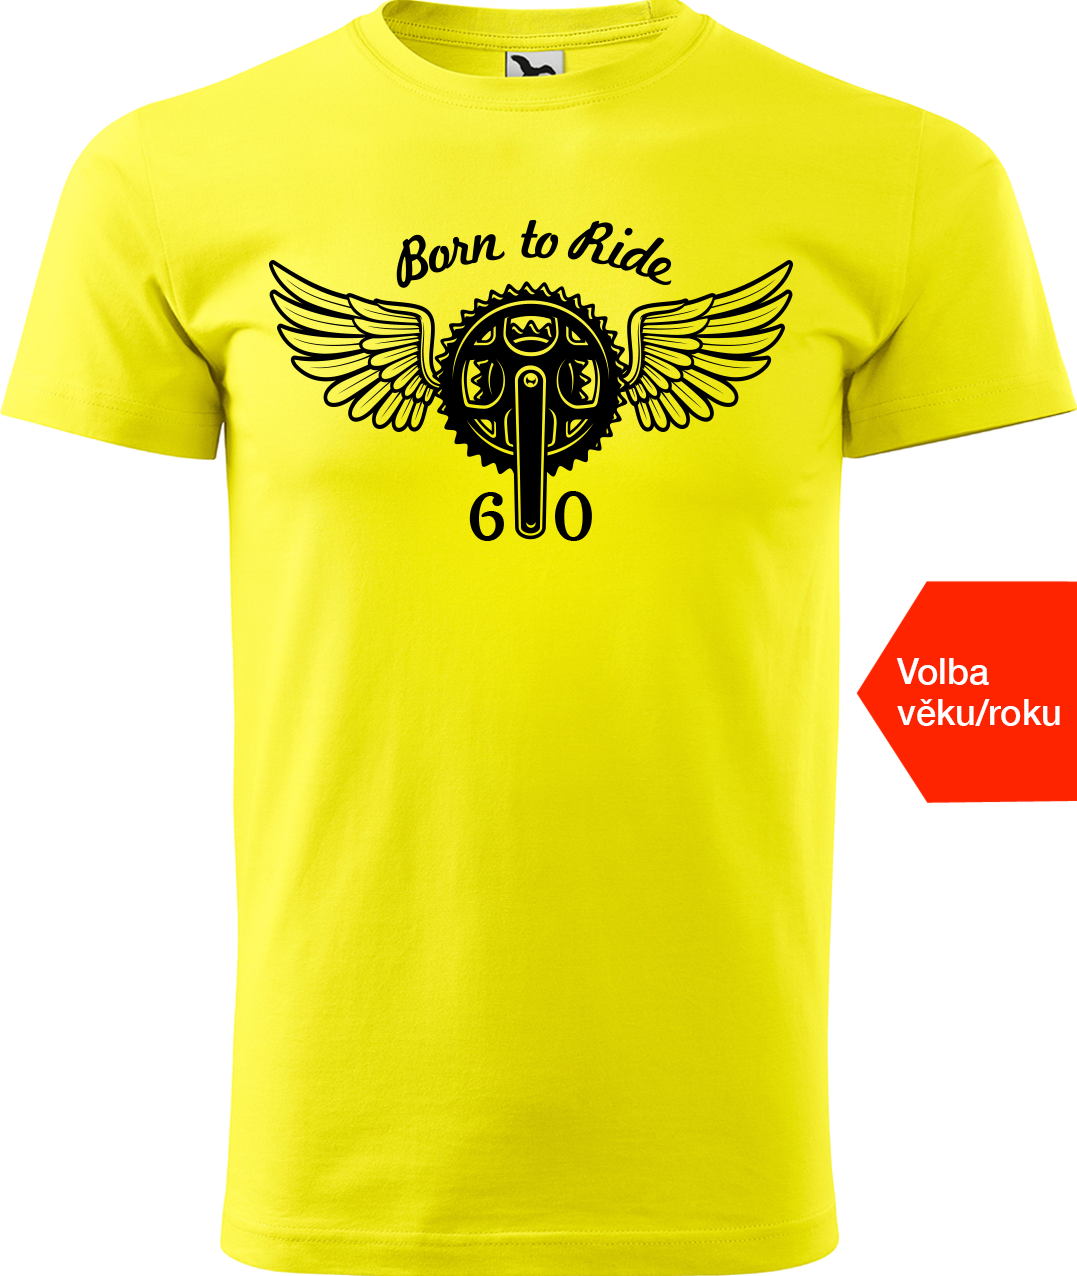 Pánské tričko pro cyklistu s věkem/rokem narození - Born to Ride (převodník) Velikost: L, Barva: Žlutá (04)